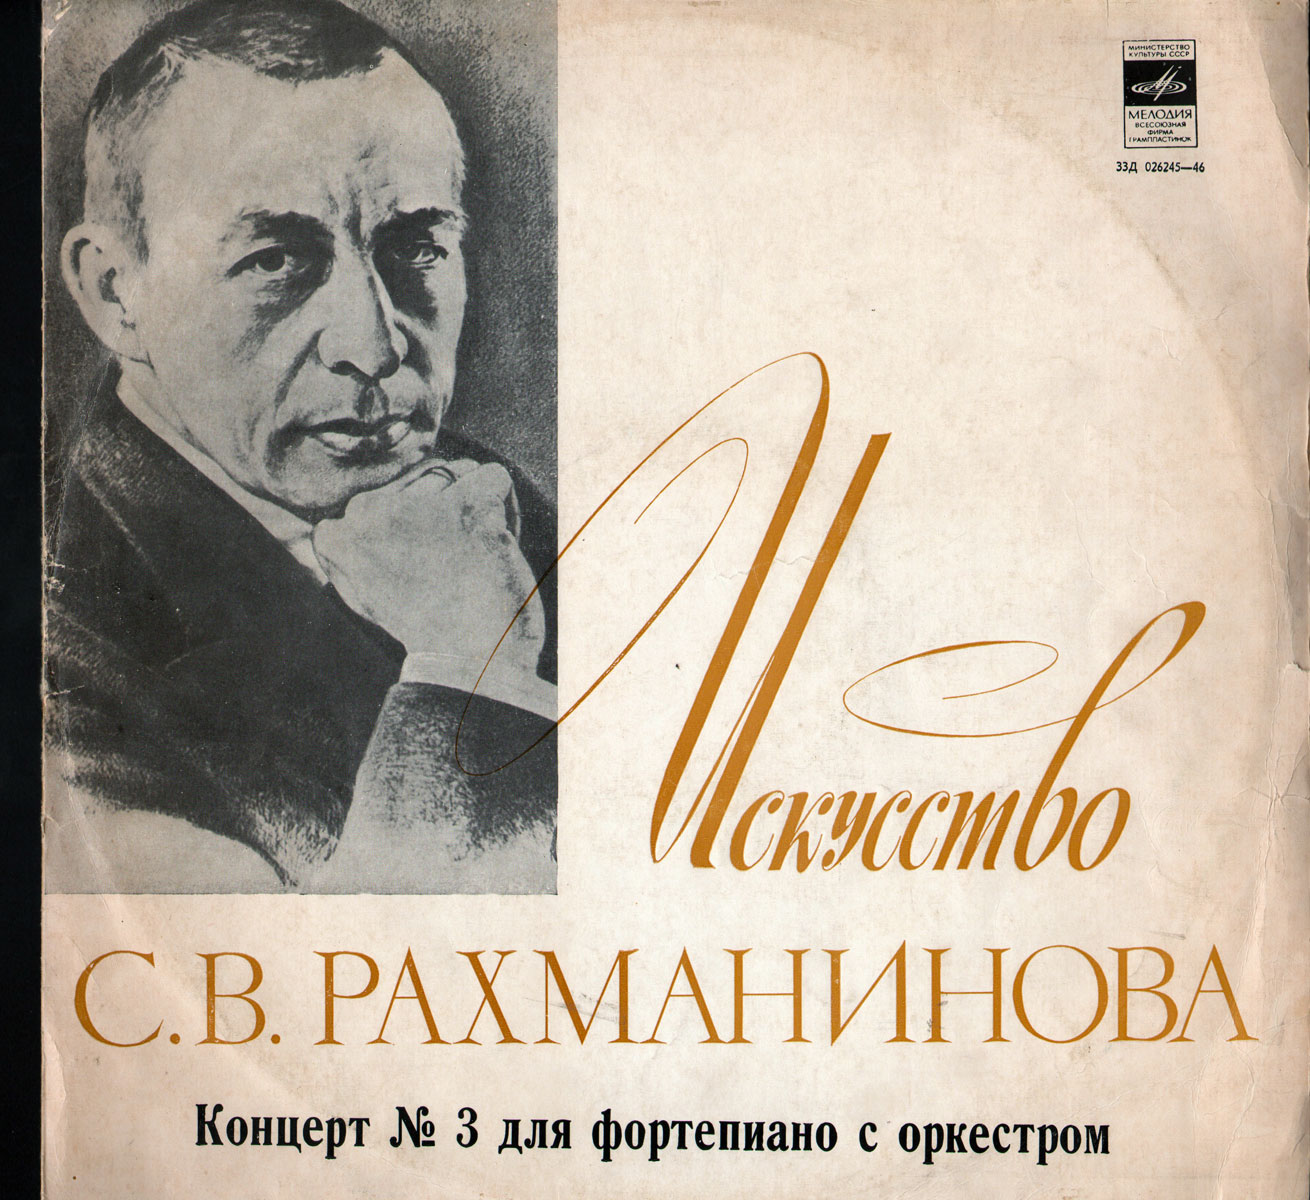 С. Рахманинов: Концерт № 3 для ф-но с оркестром (С. Рахманинов, Ю. Орманди)